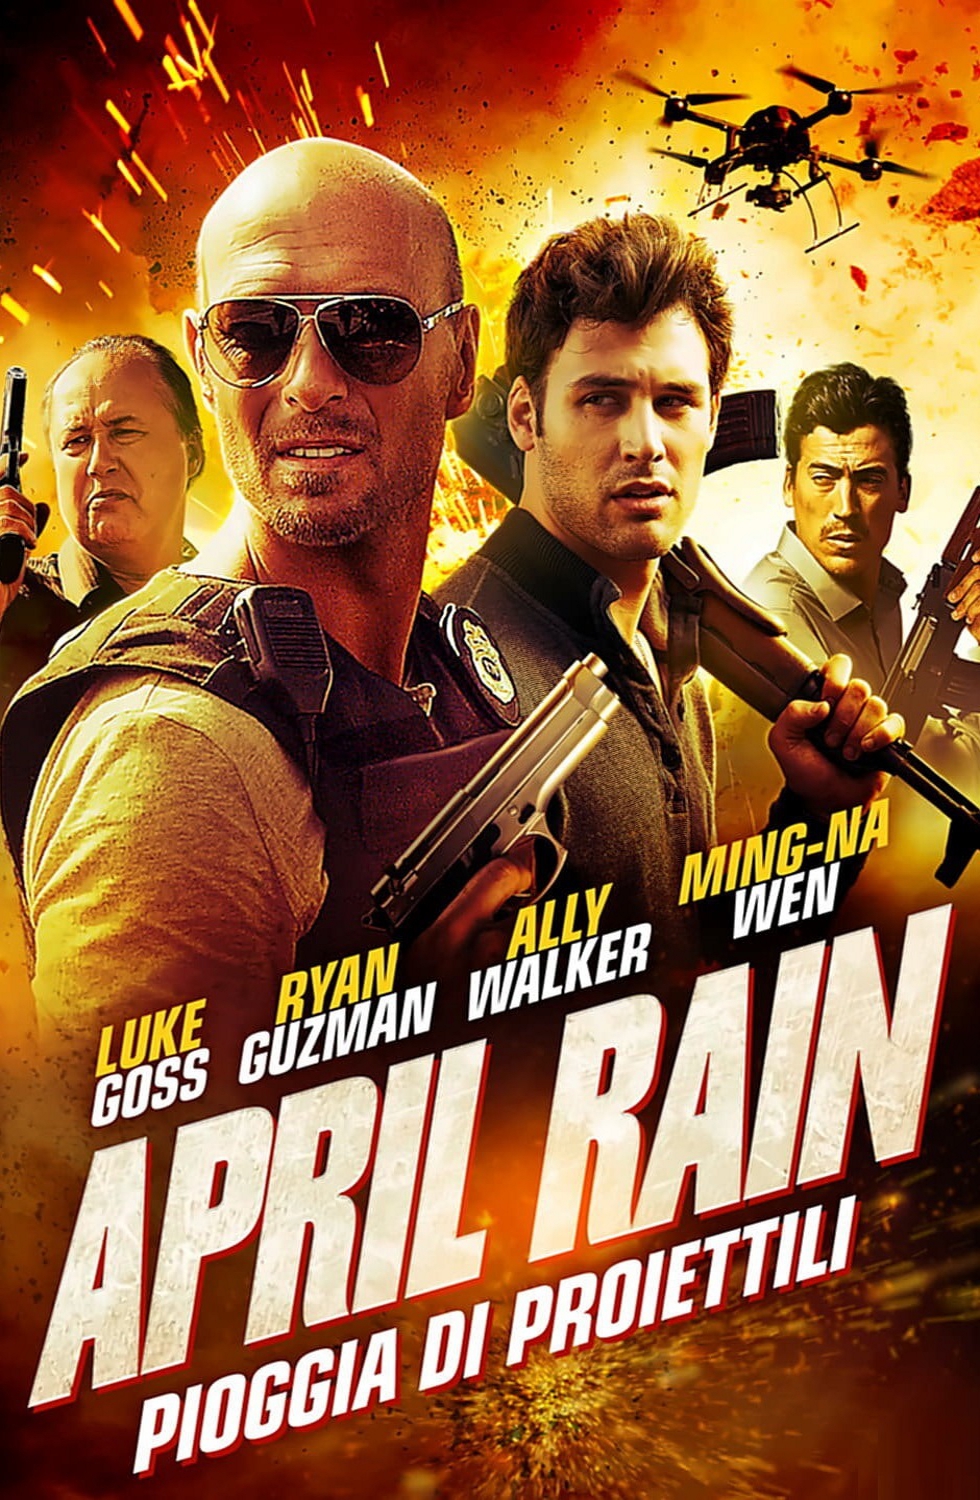 April Rain – Pioggia di proiettili [HD] (2014)